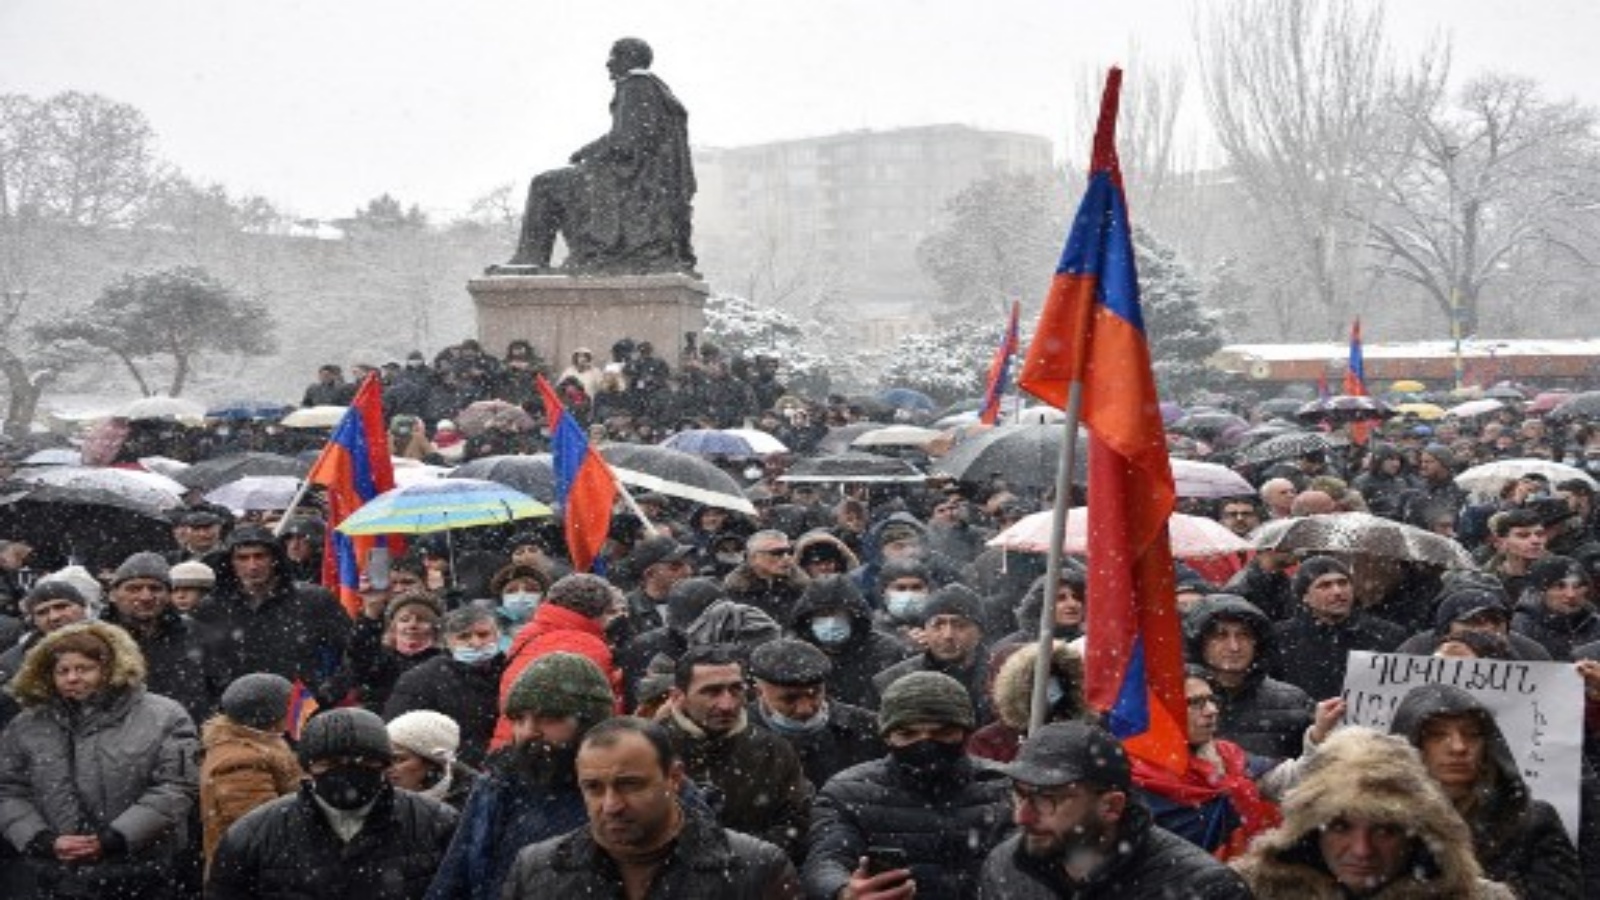 يشارك أنصار حزب Dashnaktsutyun المعارض في مسيرة للمطالبة باستقالة رئيس وزرائهم ، الذي يقولون إنه أساء إدارة حرب العام الماضي مع أذربيجان ، في ساحة الحرية بوسط يريفان في 20 فبراير 2021.